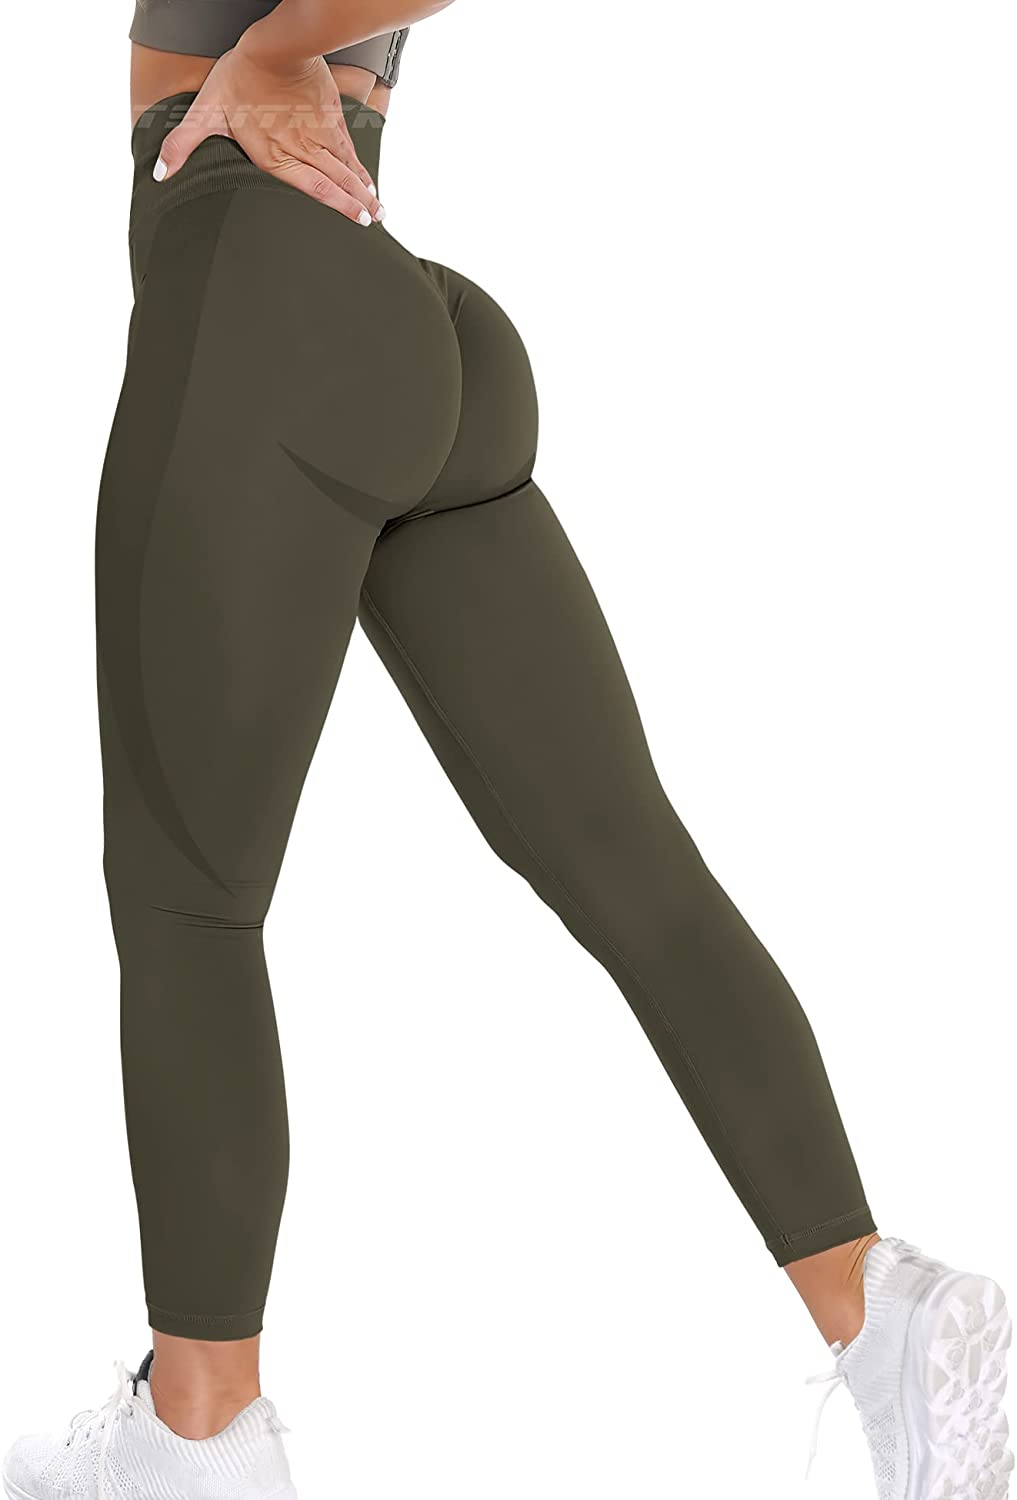 Buy TSUTAYA Seamless Workout Leggings for Women High